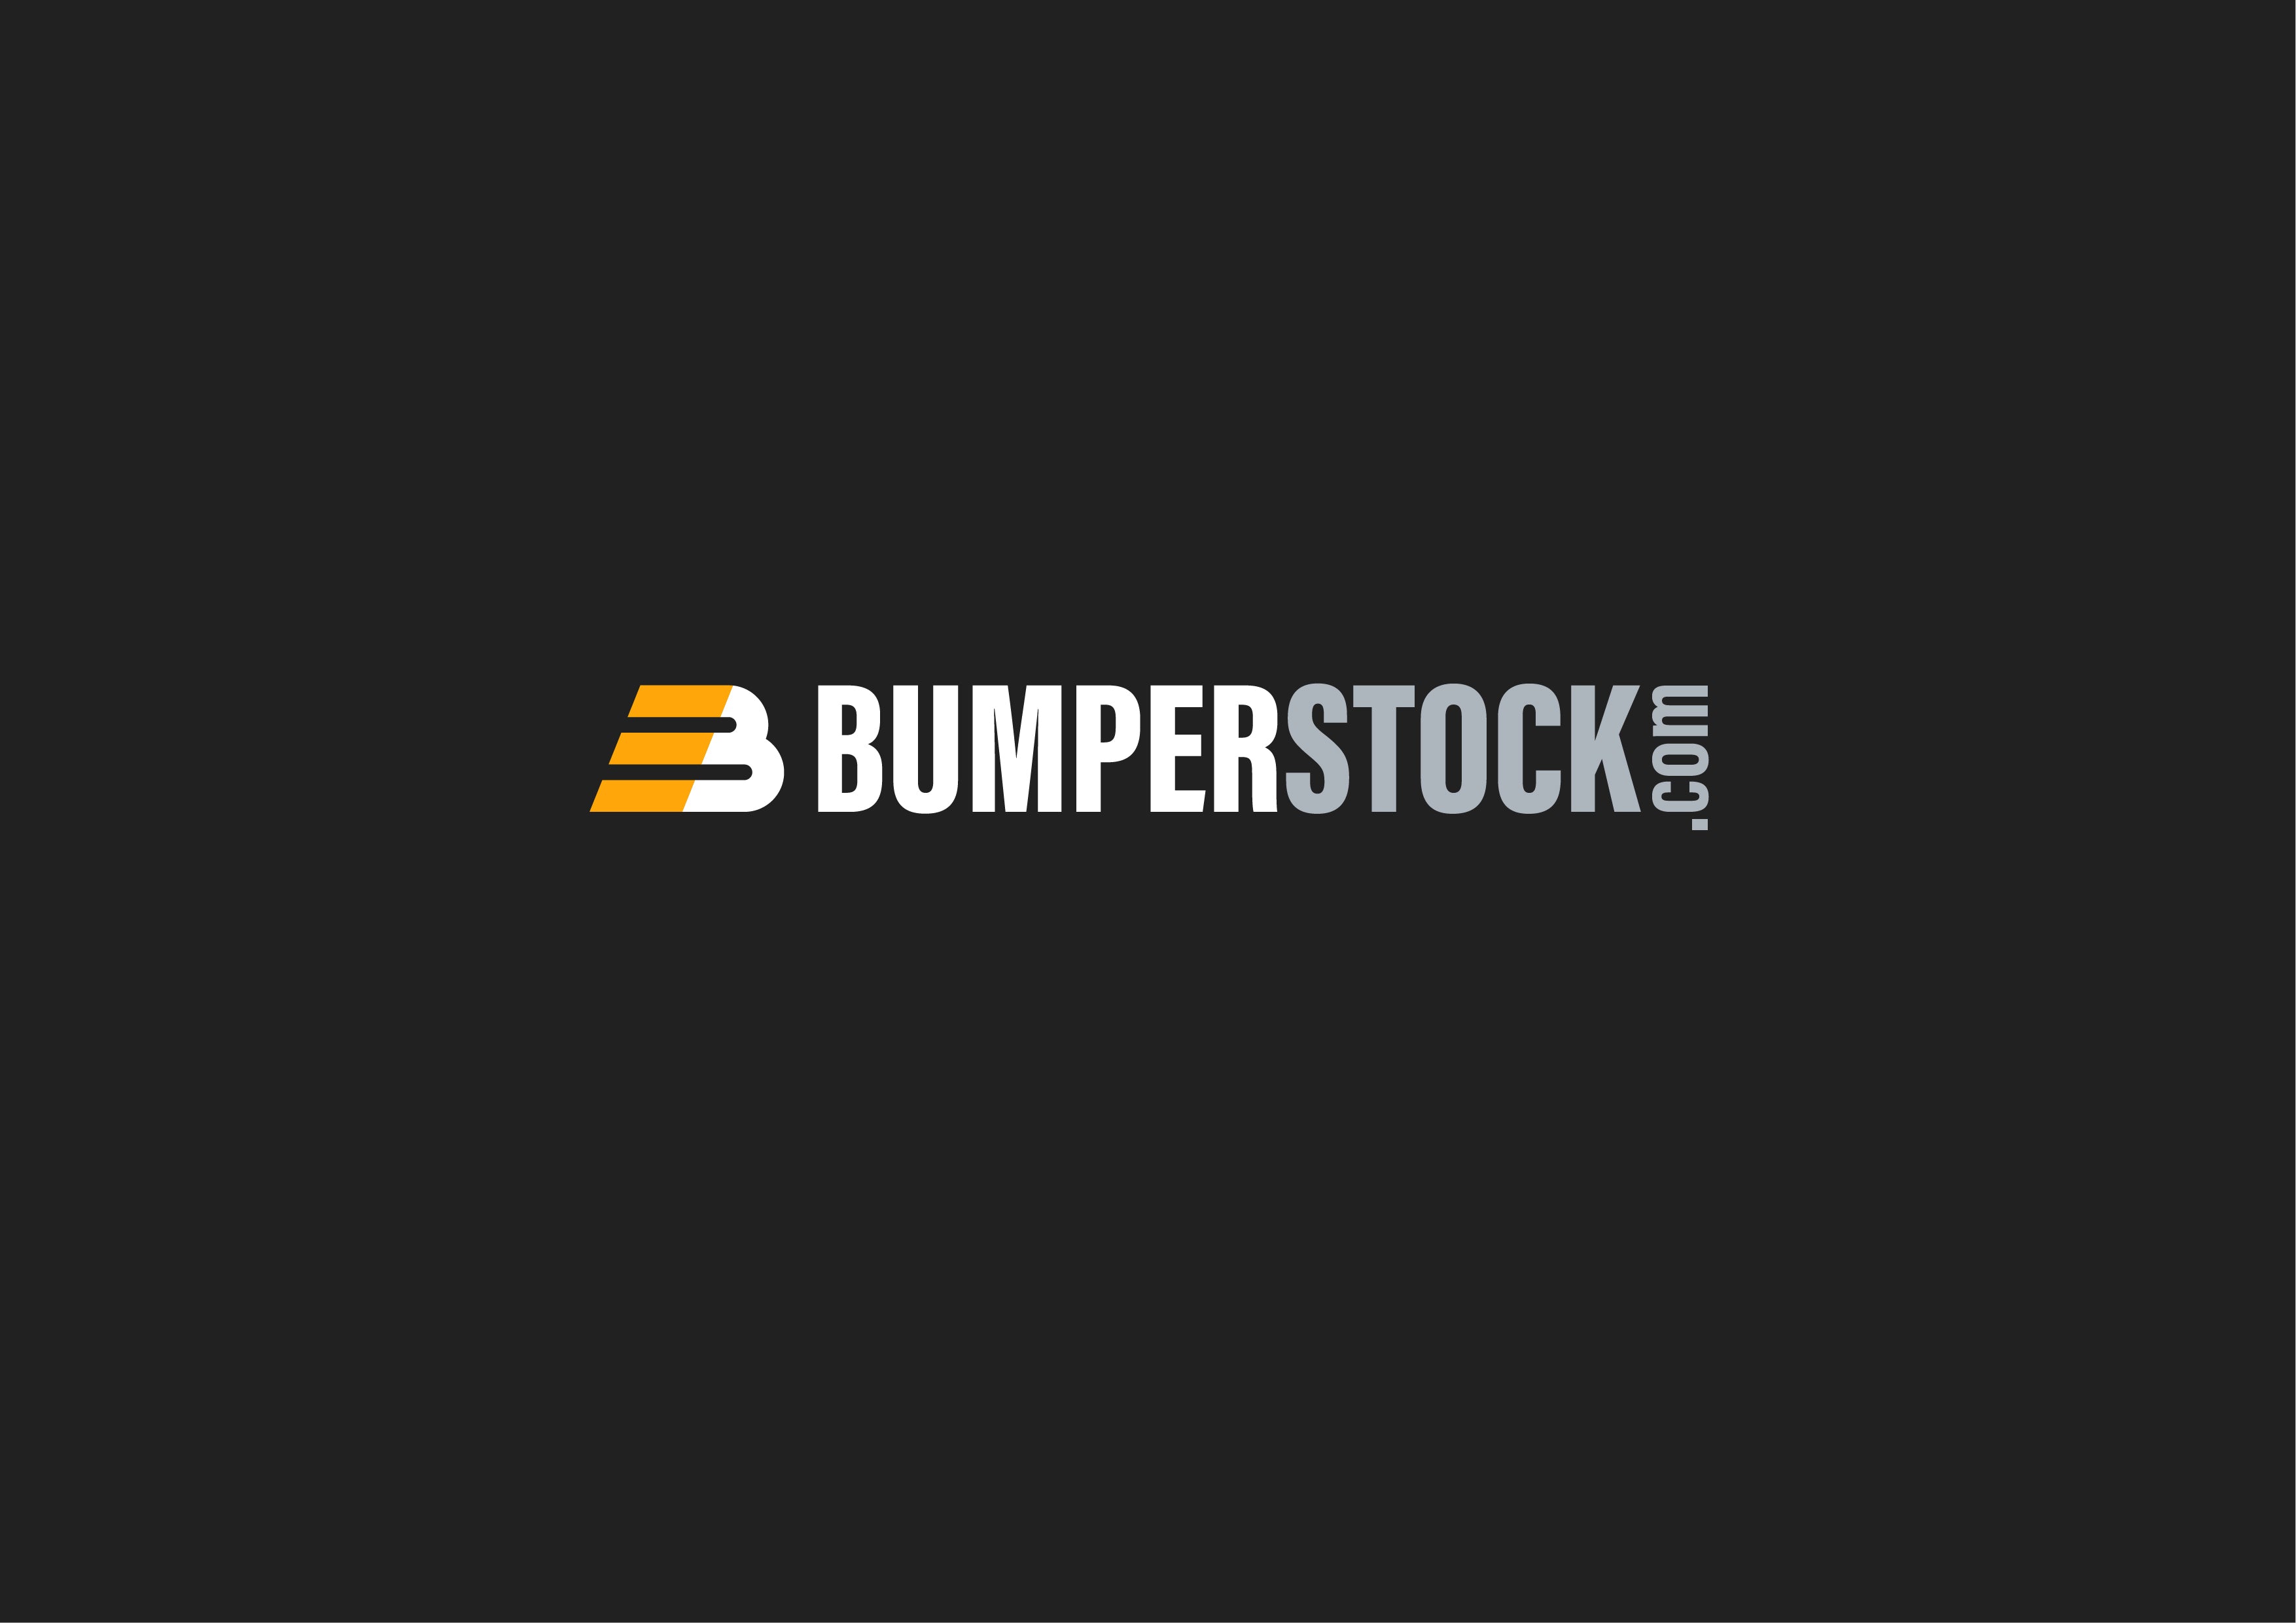 BumperStock